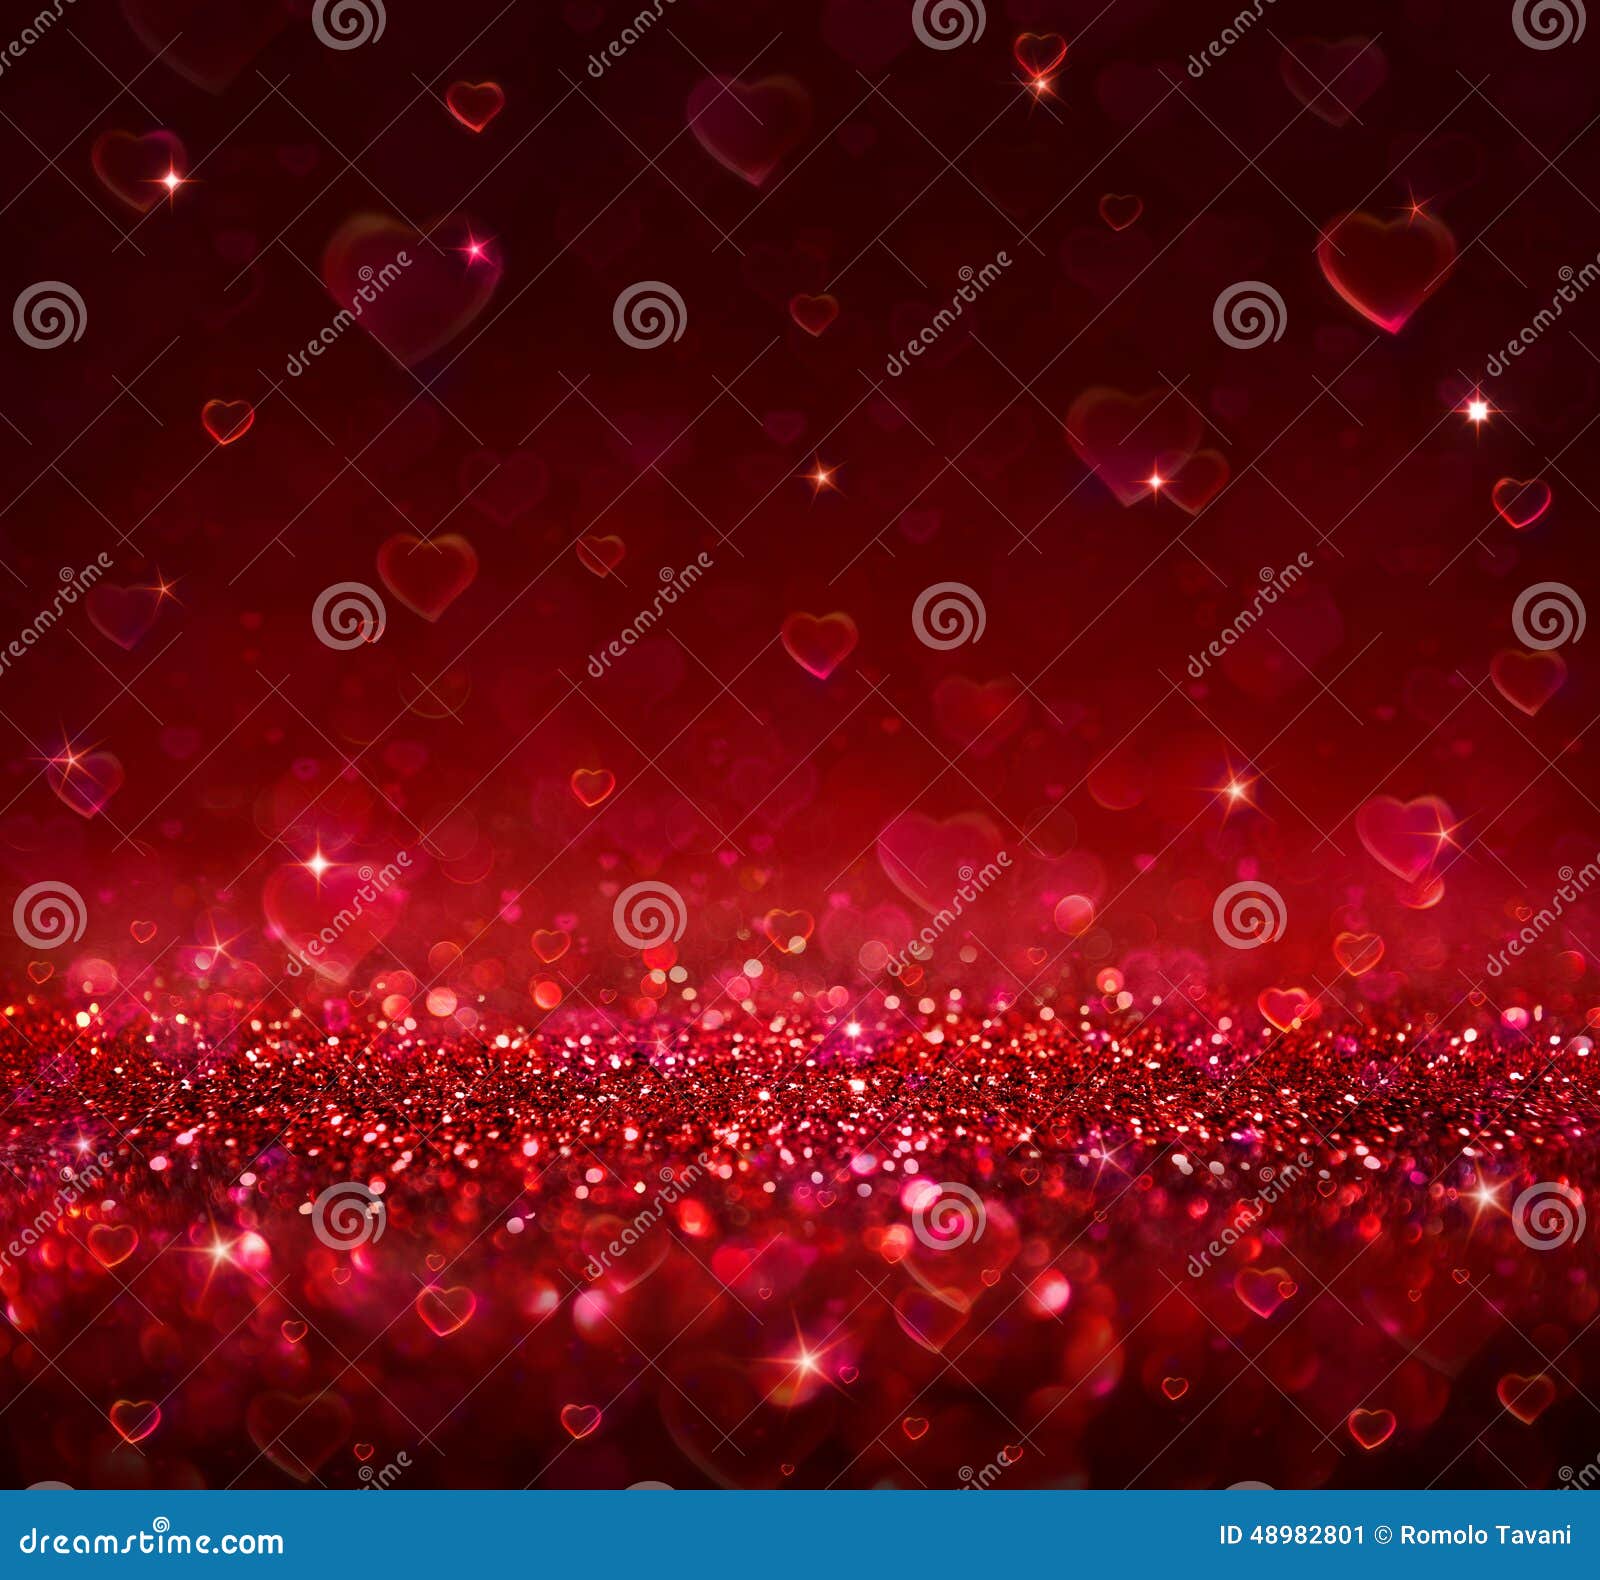 valentine red background